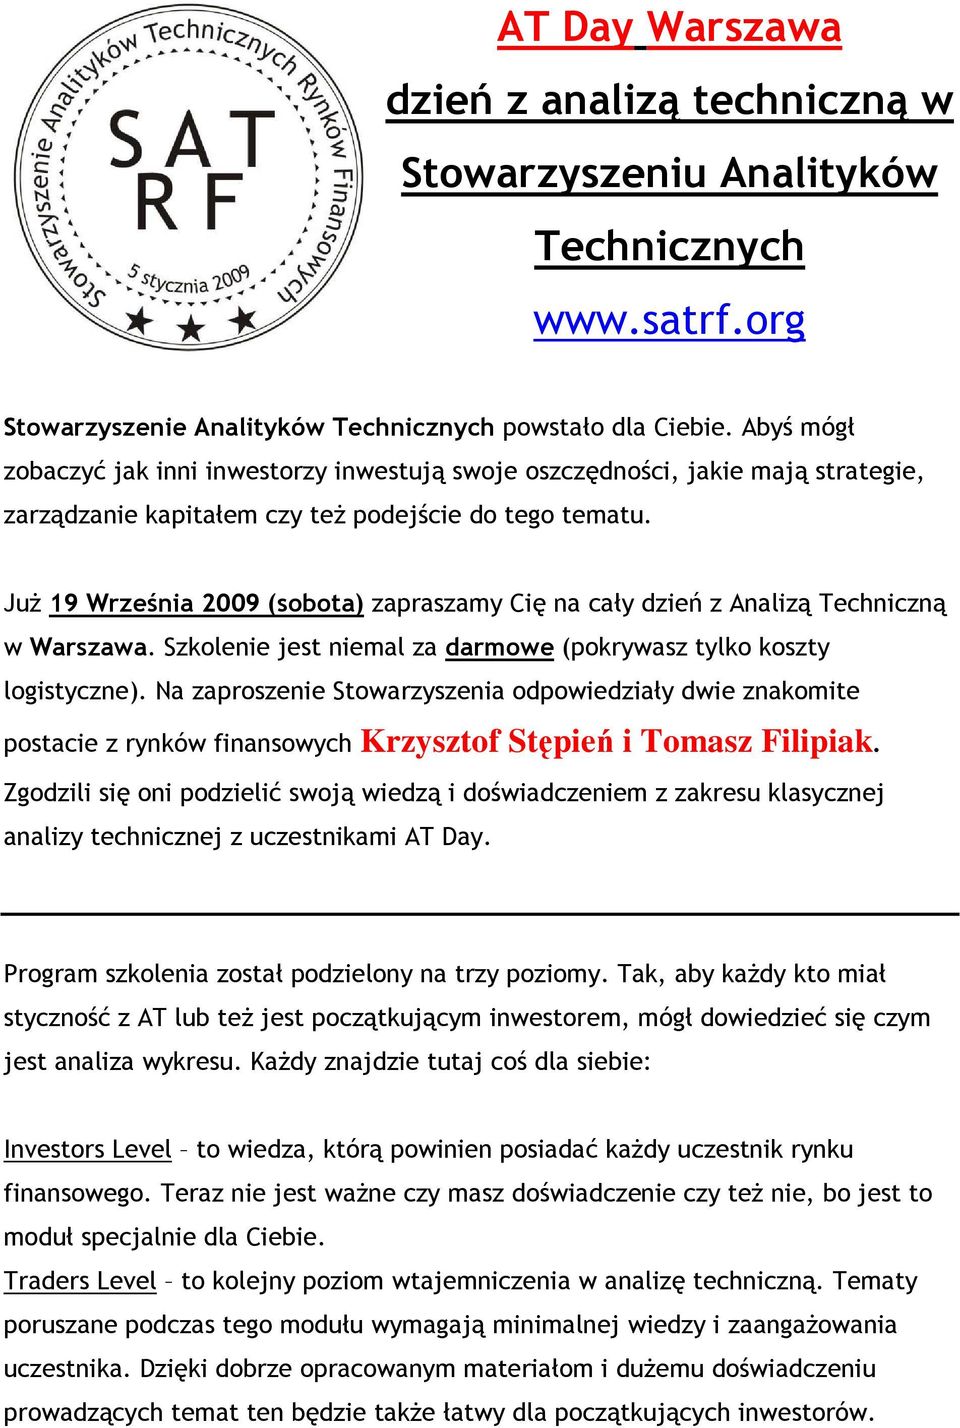 JuŜ 19 Września 2009 (sobota) zapraszamy Cię na cały dzień z Analizą Techniczną w Warszawa. Szkolenie jest niemal za darmowe (pokrywasz tylko koszty logistyczne).